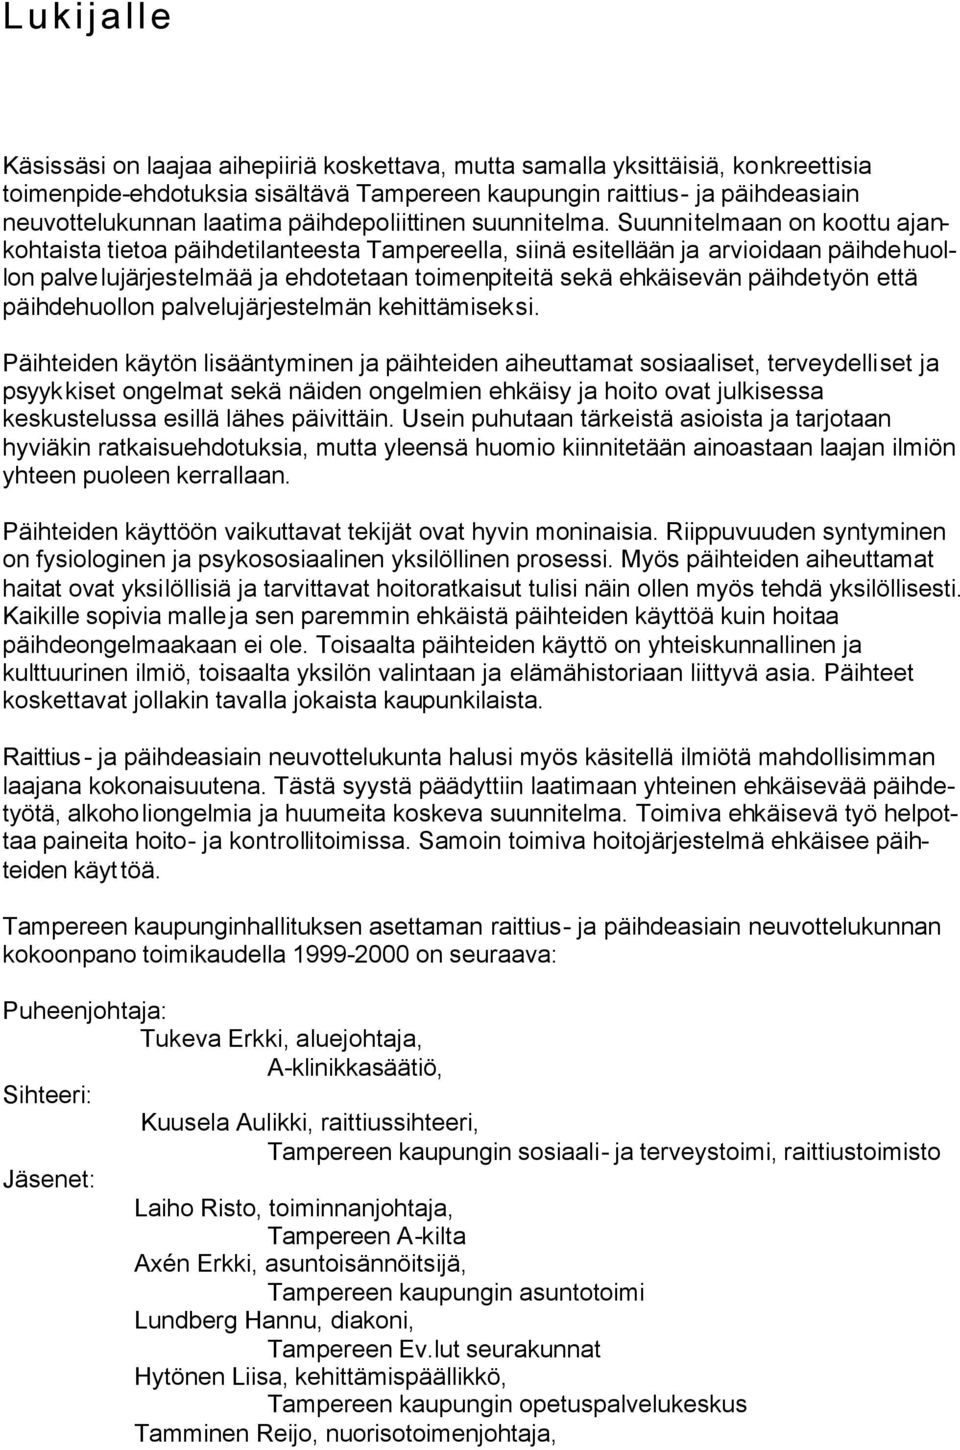 Suunnitelmaan on koottu ajankohtaista tietoa päihdetilanteesta Tampereella, siinä esitellään ja arvioidaan päihdehuollon palvelujärjestelmää ja ehdotetaan toimenpiteitä sekä ehkäisevän päihdetyön